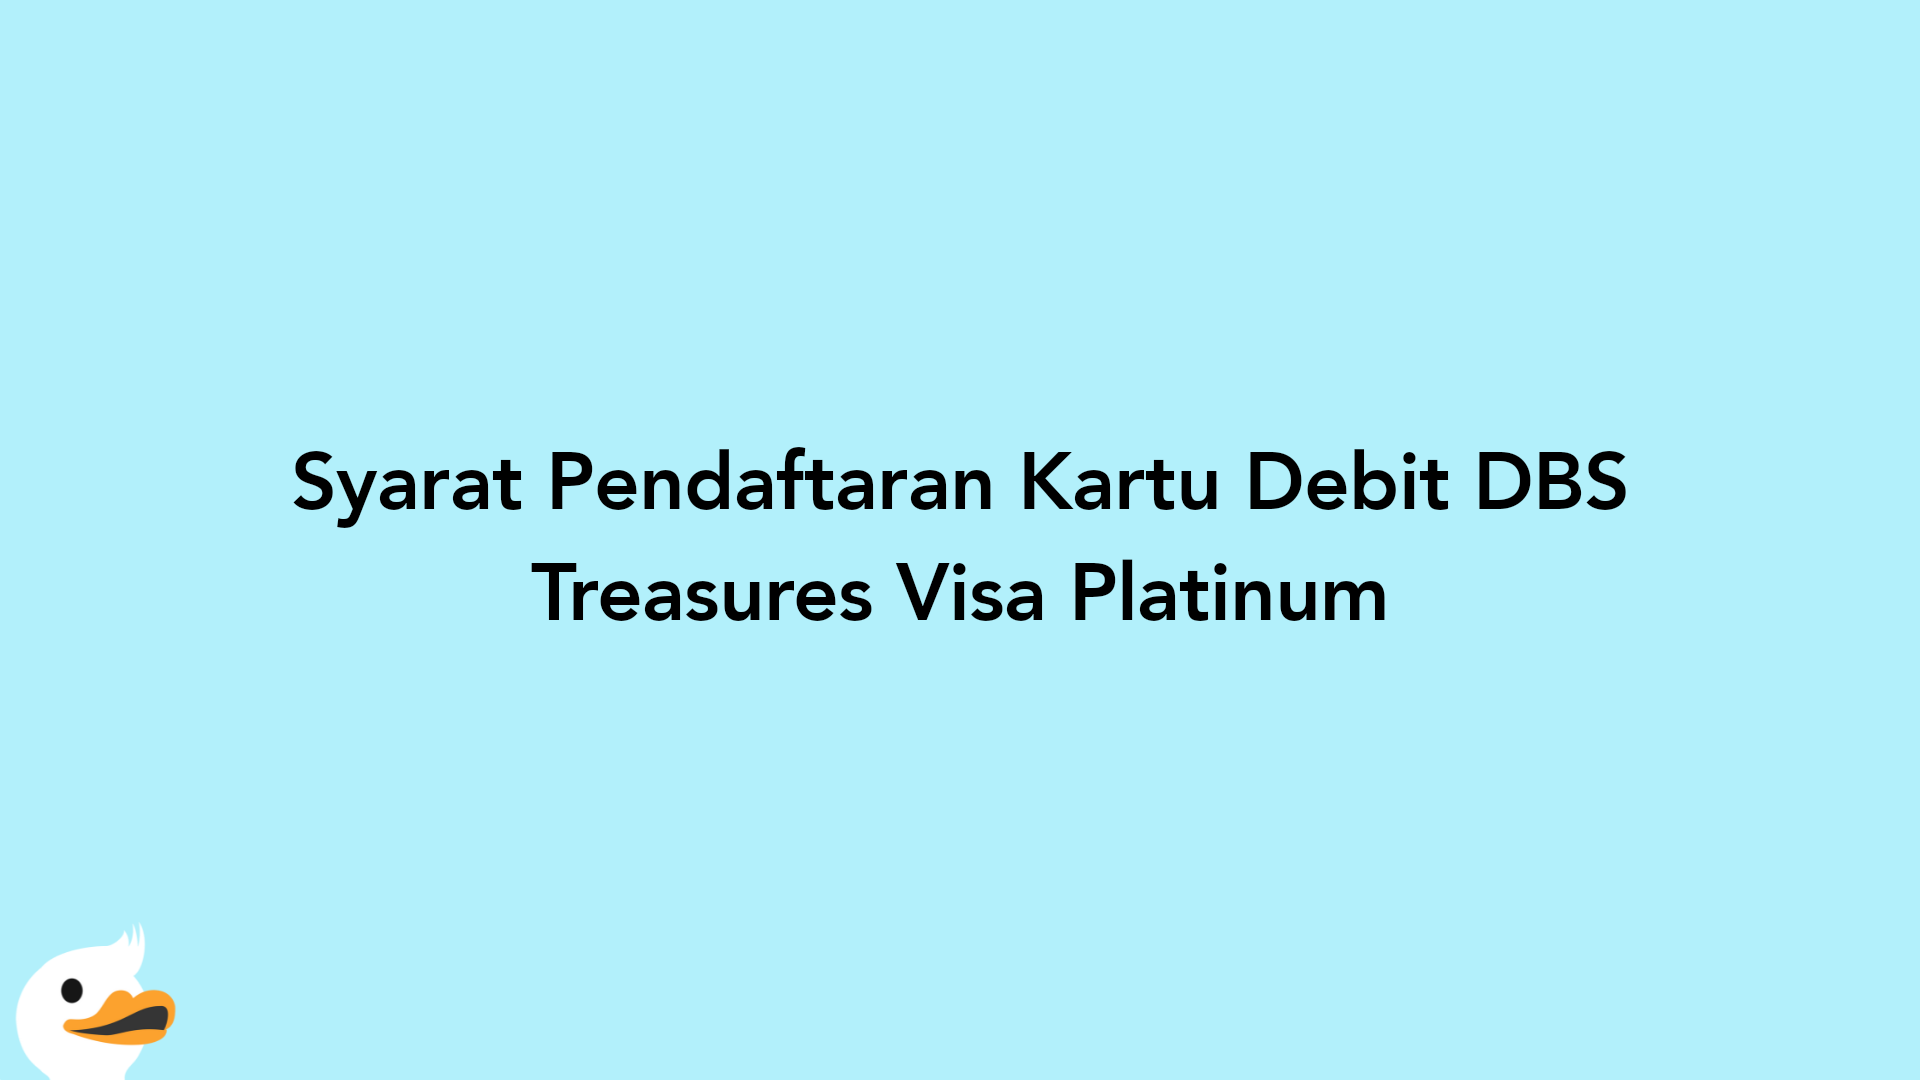 Syarat Pendaftaran Kartu Debit DBS Treasures Visa Platinum